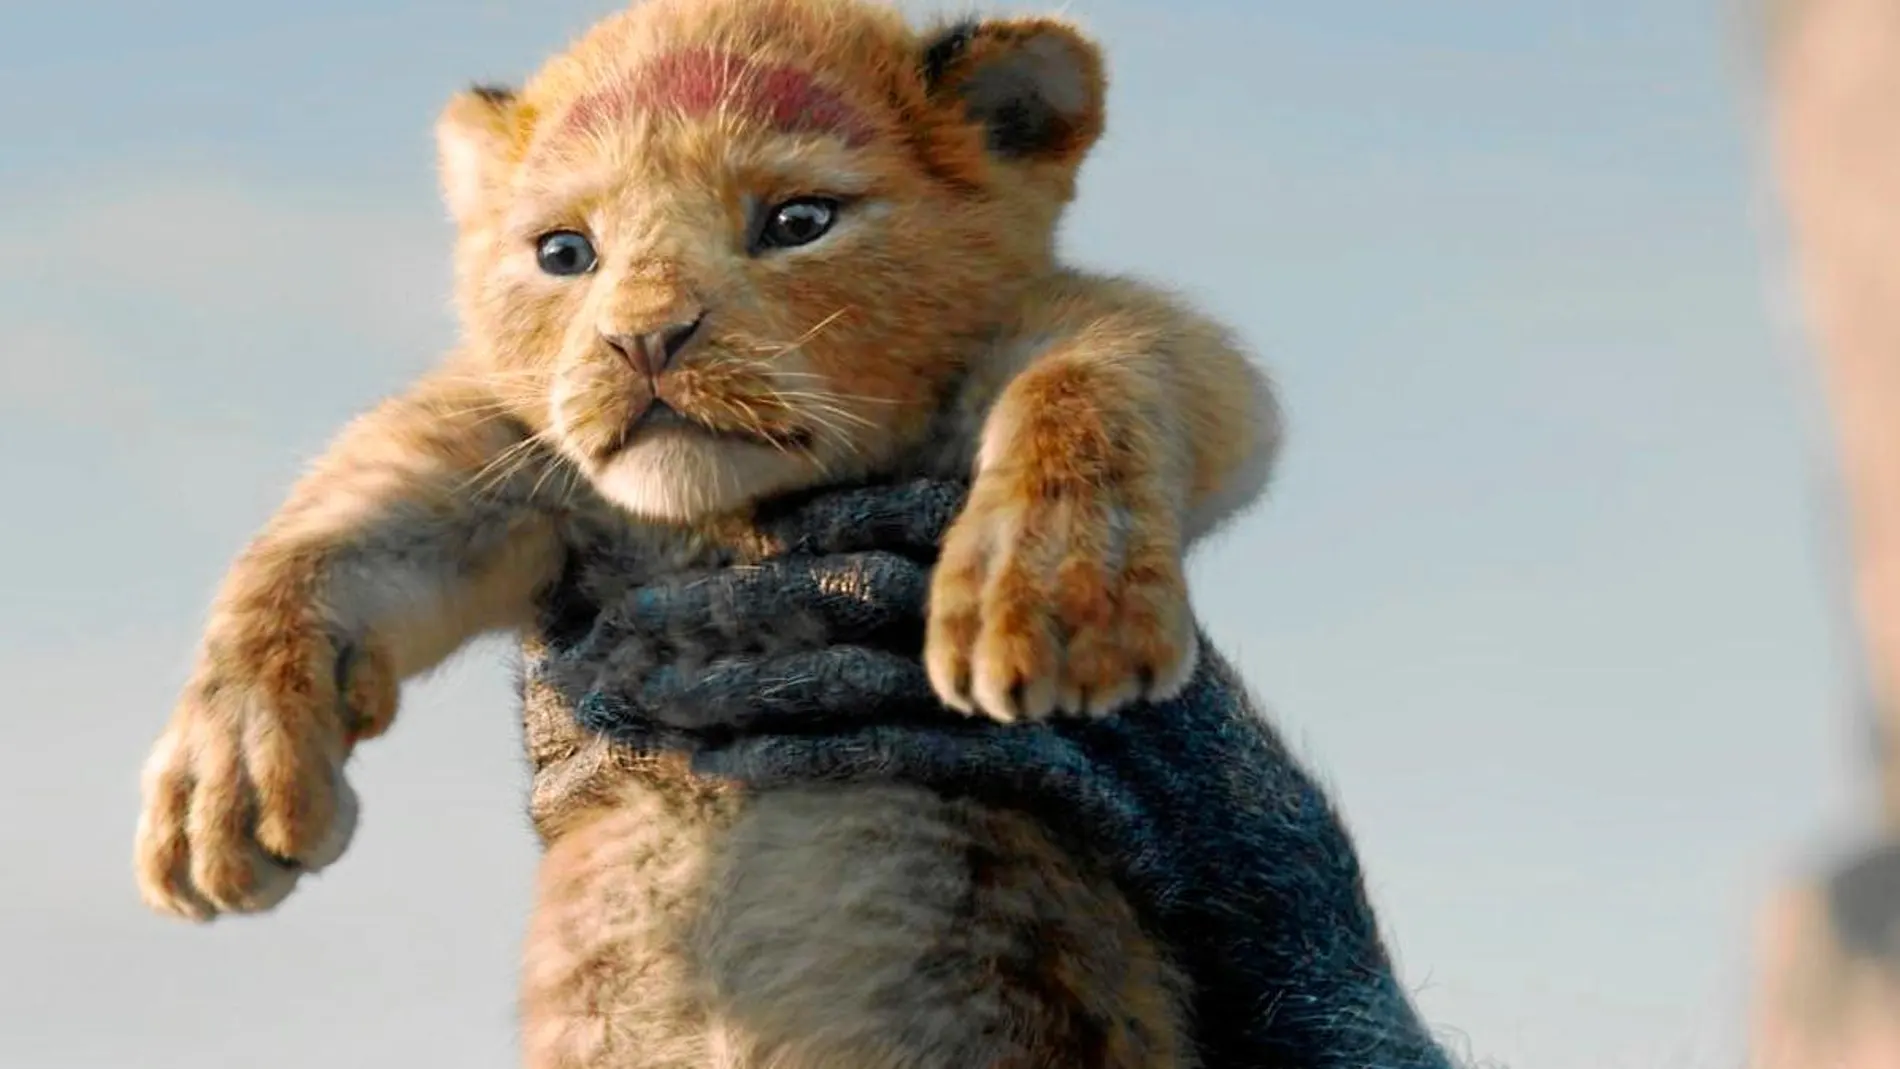 "El rey león": Disney vuelve a coronar a Simba